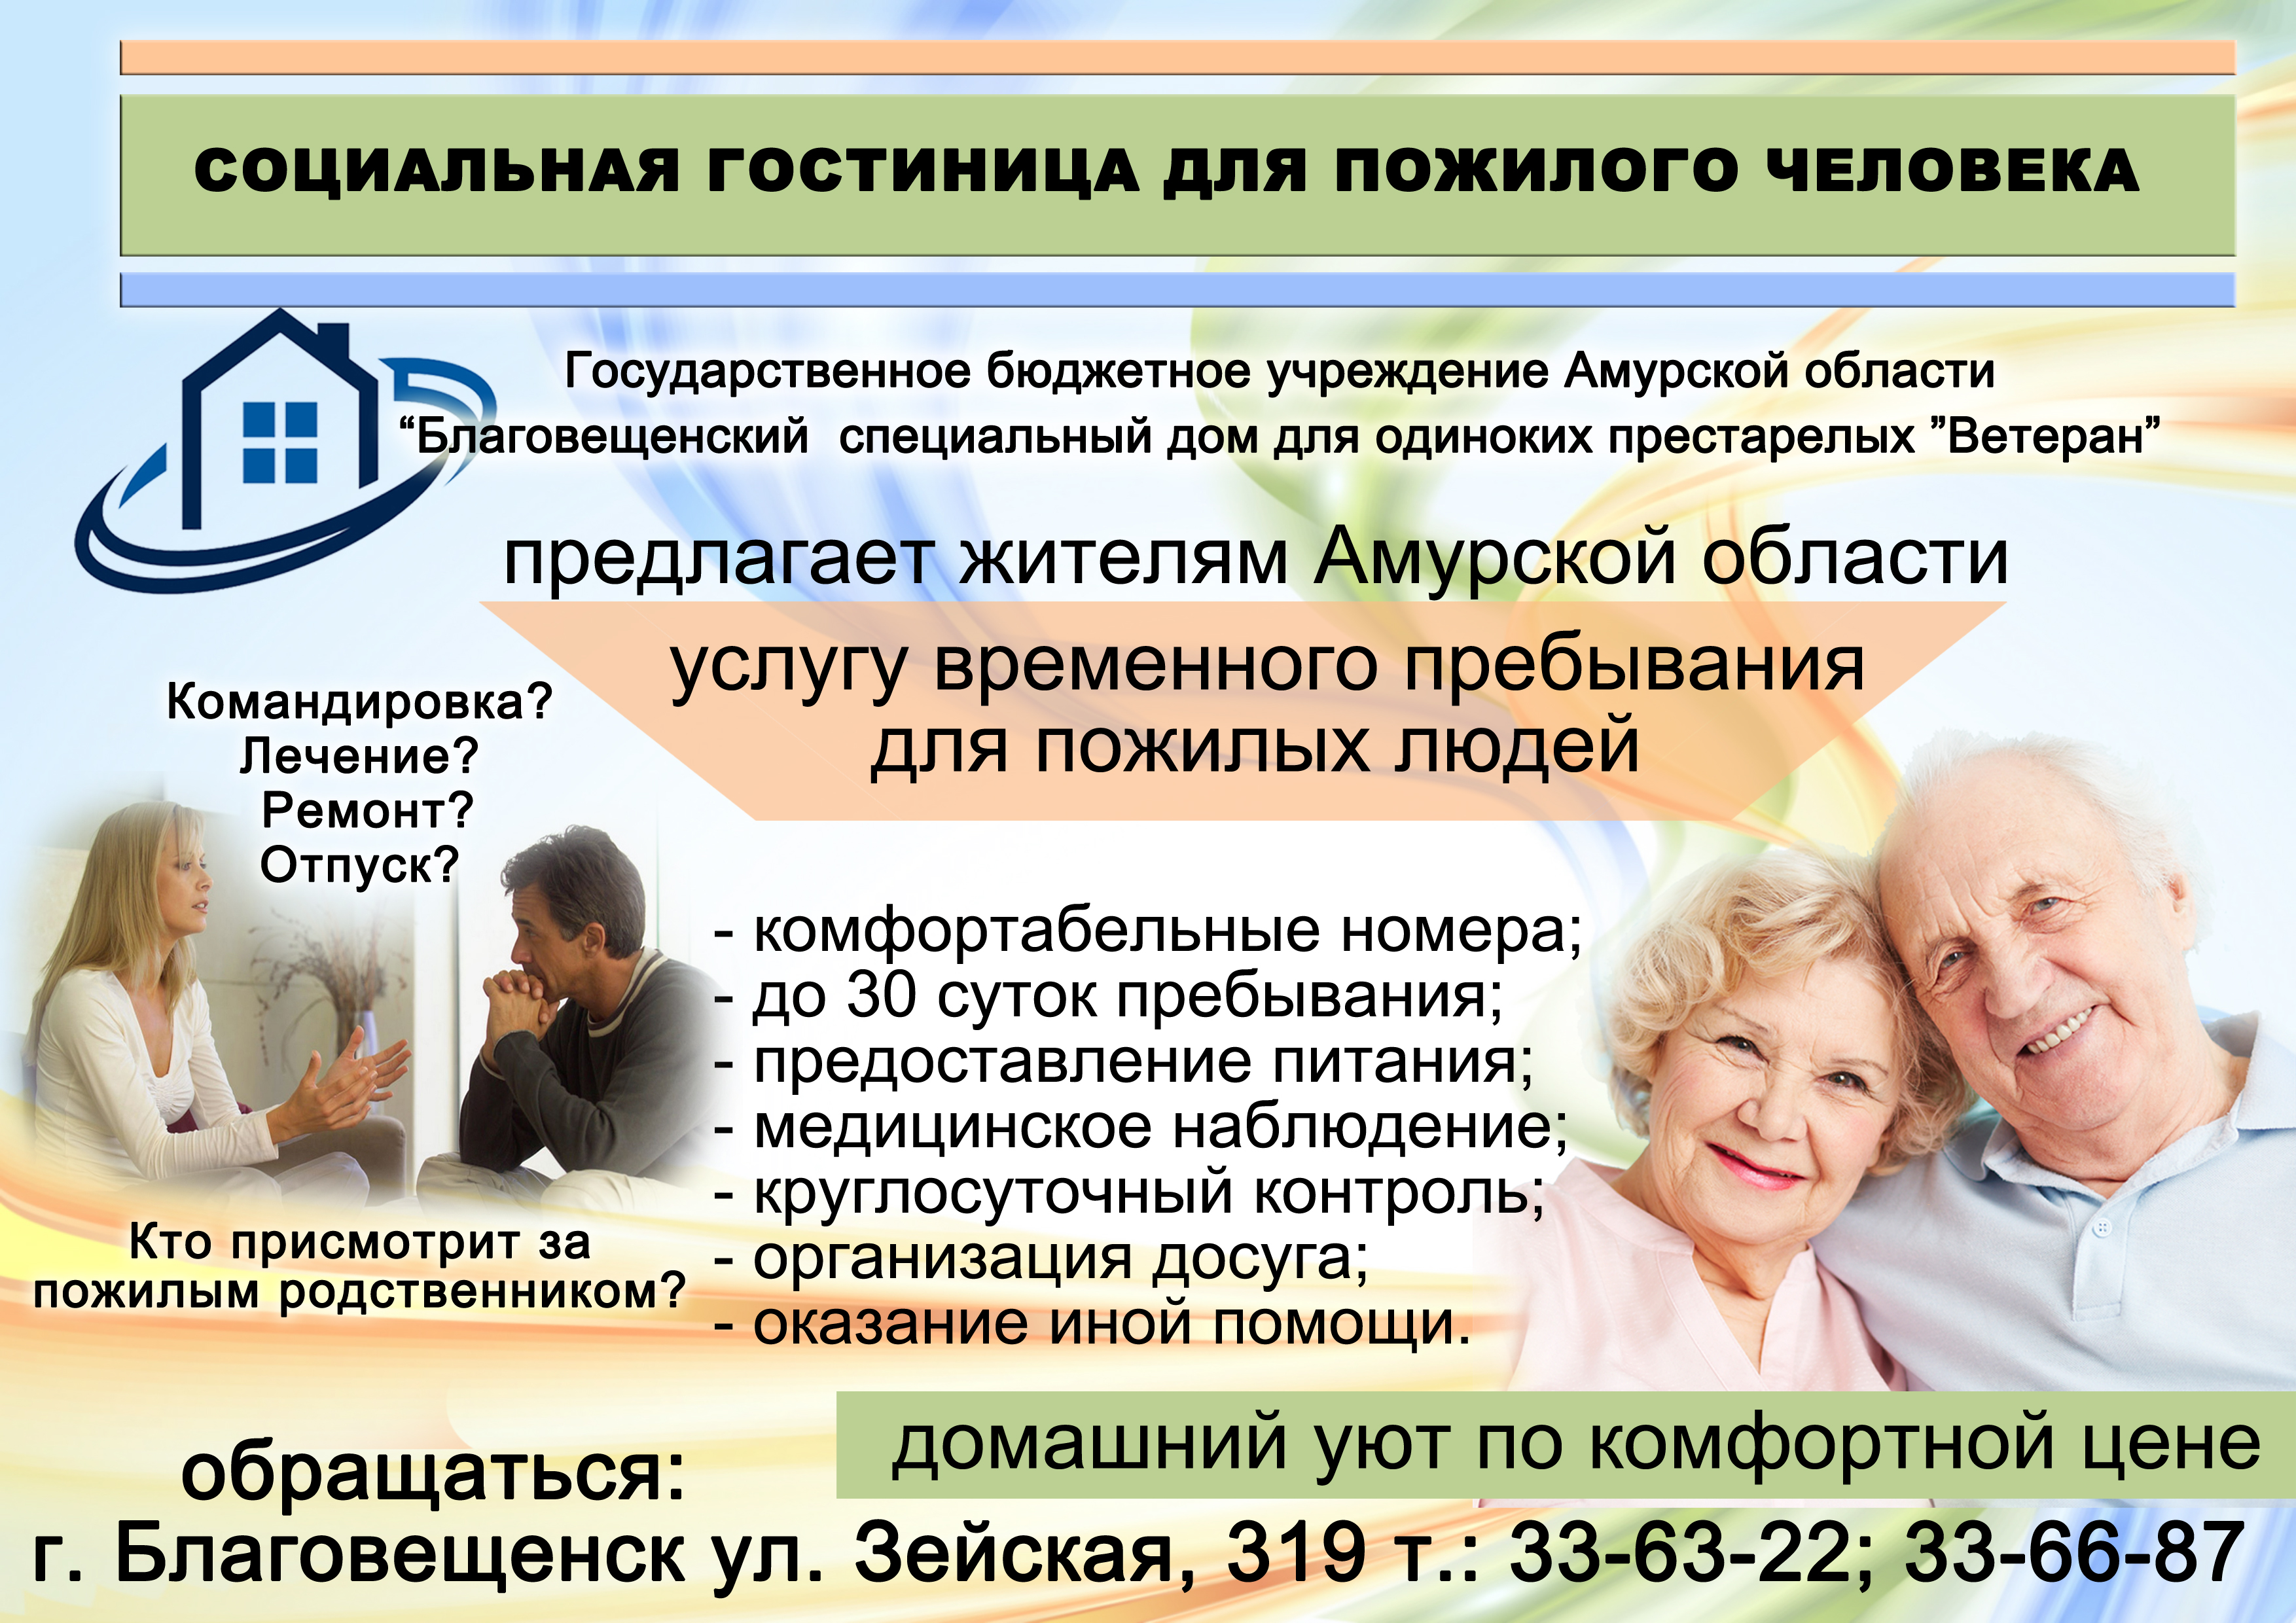 Социальное обслуживание на дому учреждения. Социальные услуги для пожилых людей. Реклама ко Дню пожилых людей. Реклама для пожилых. Социальный проект для пожилых людей.